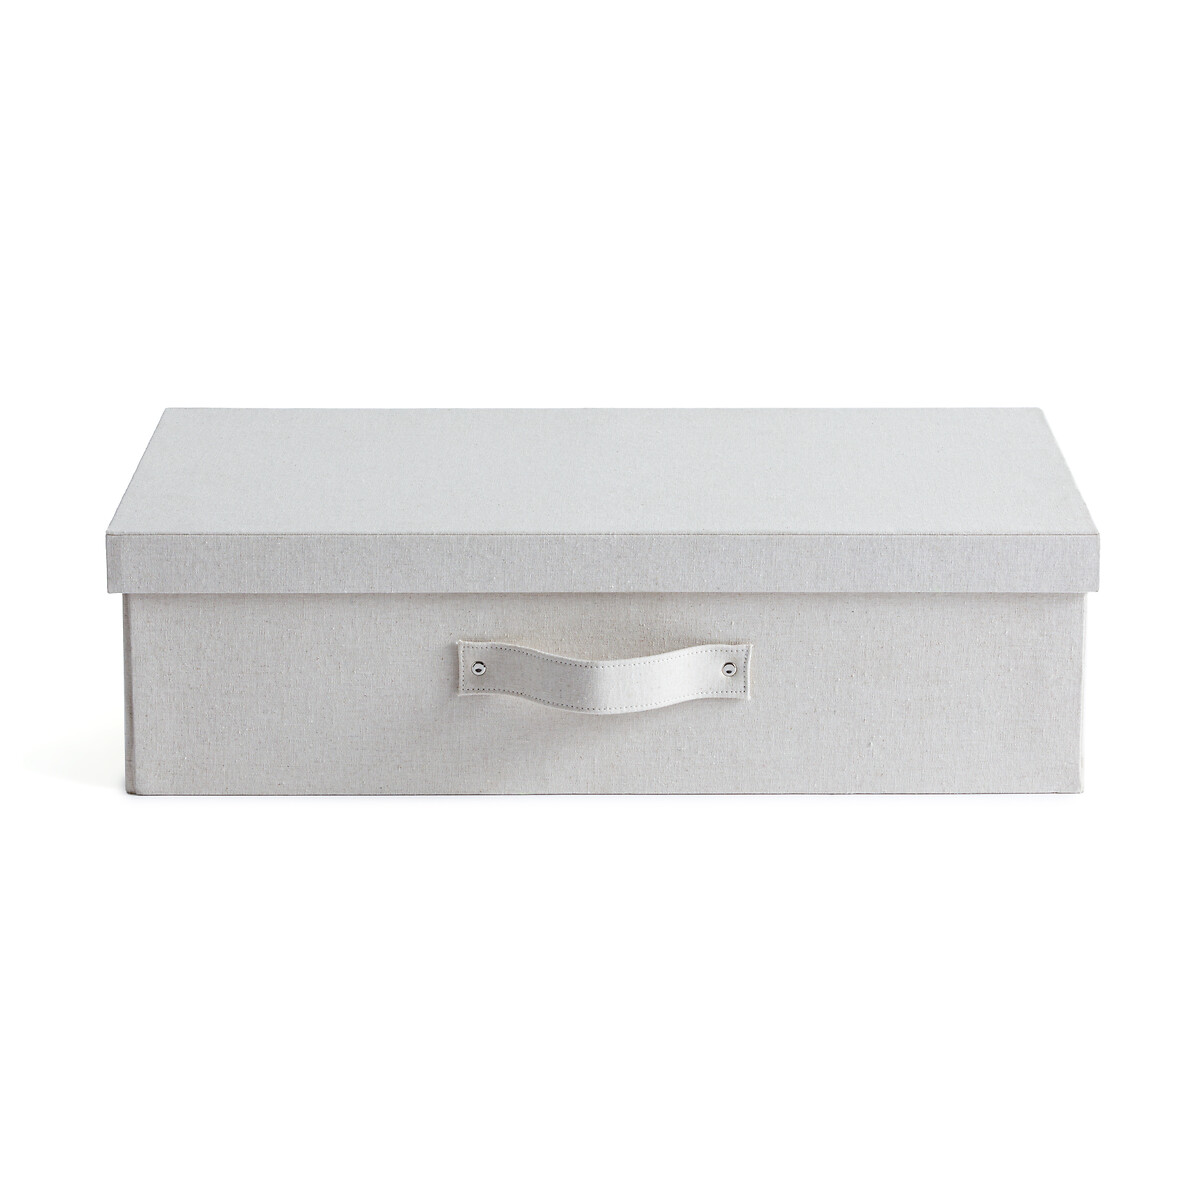 Коробка LaRedoute Коробка Для хранения из льна Lisandre единый размер бежевый